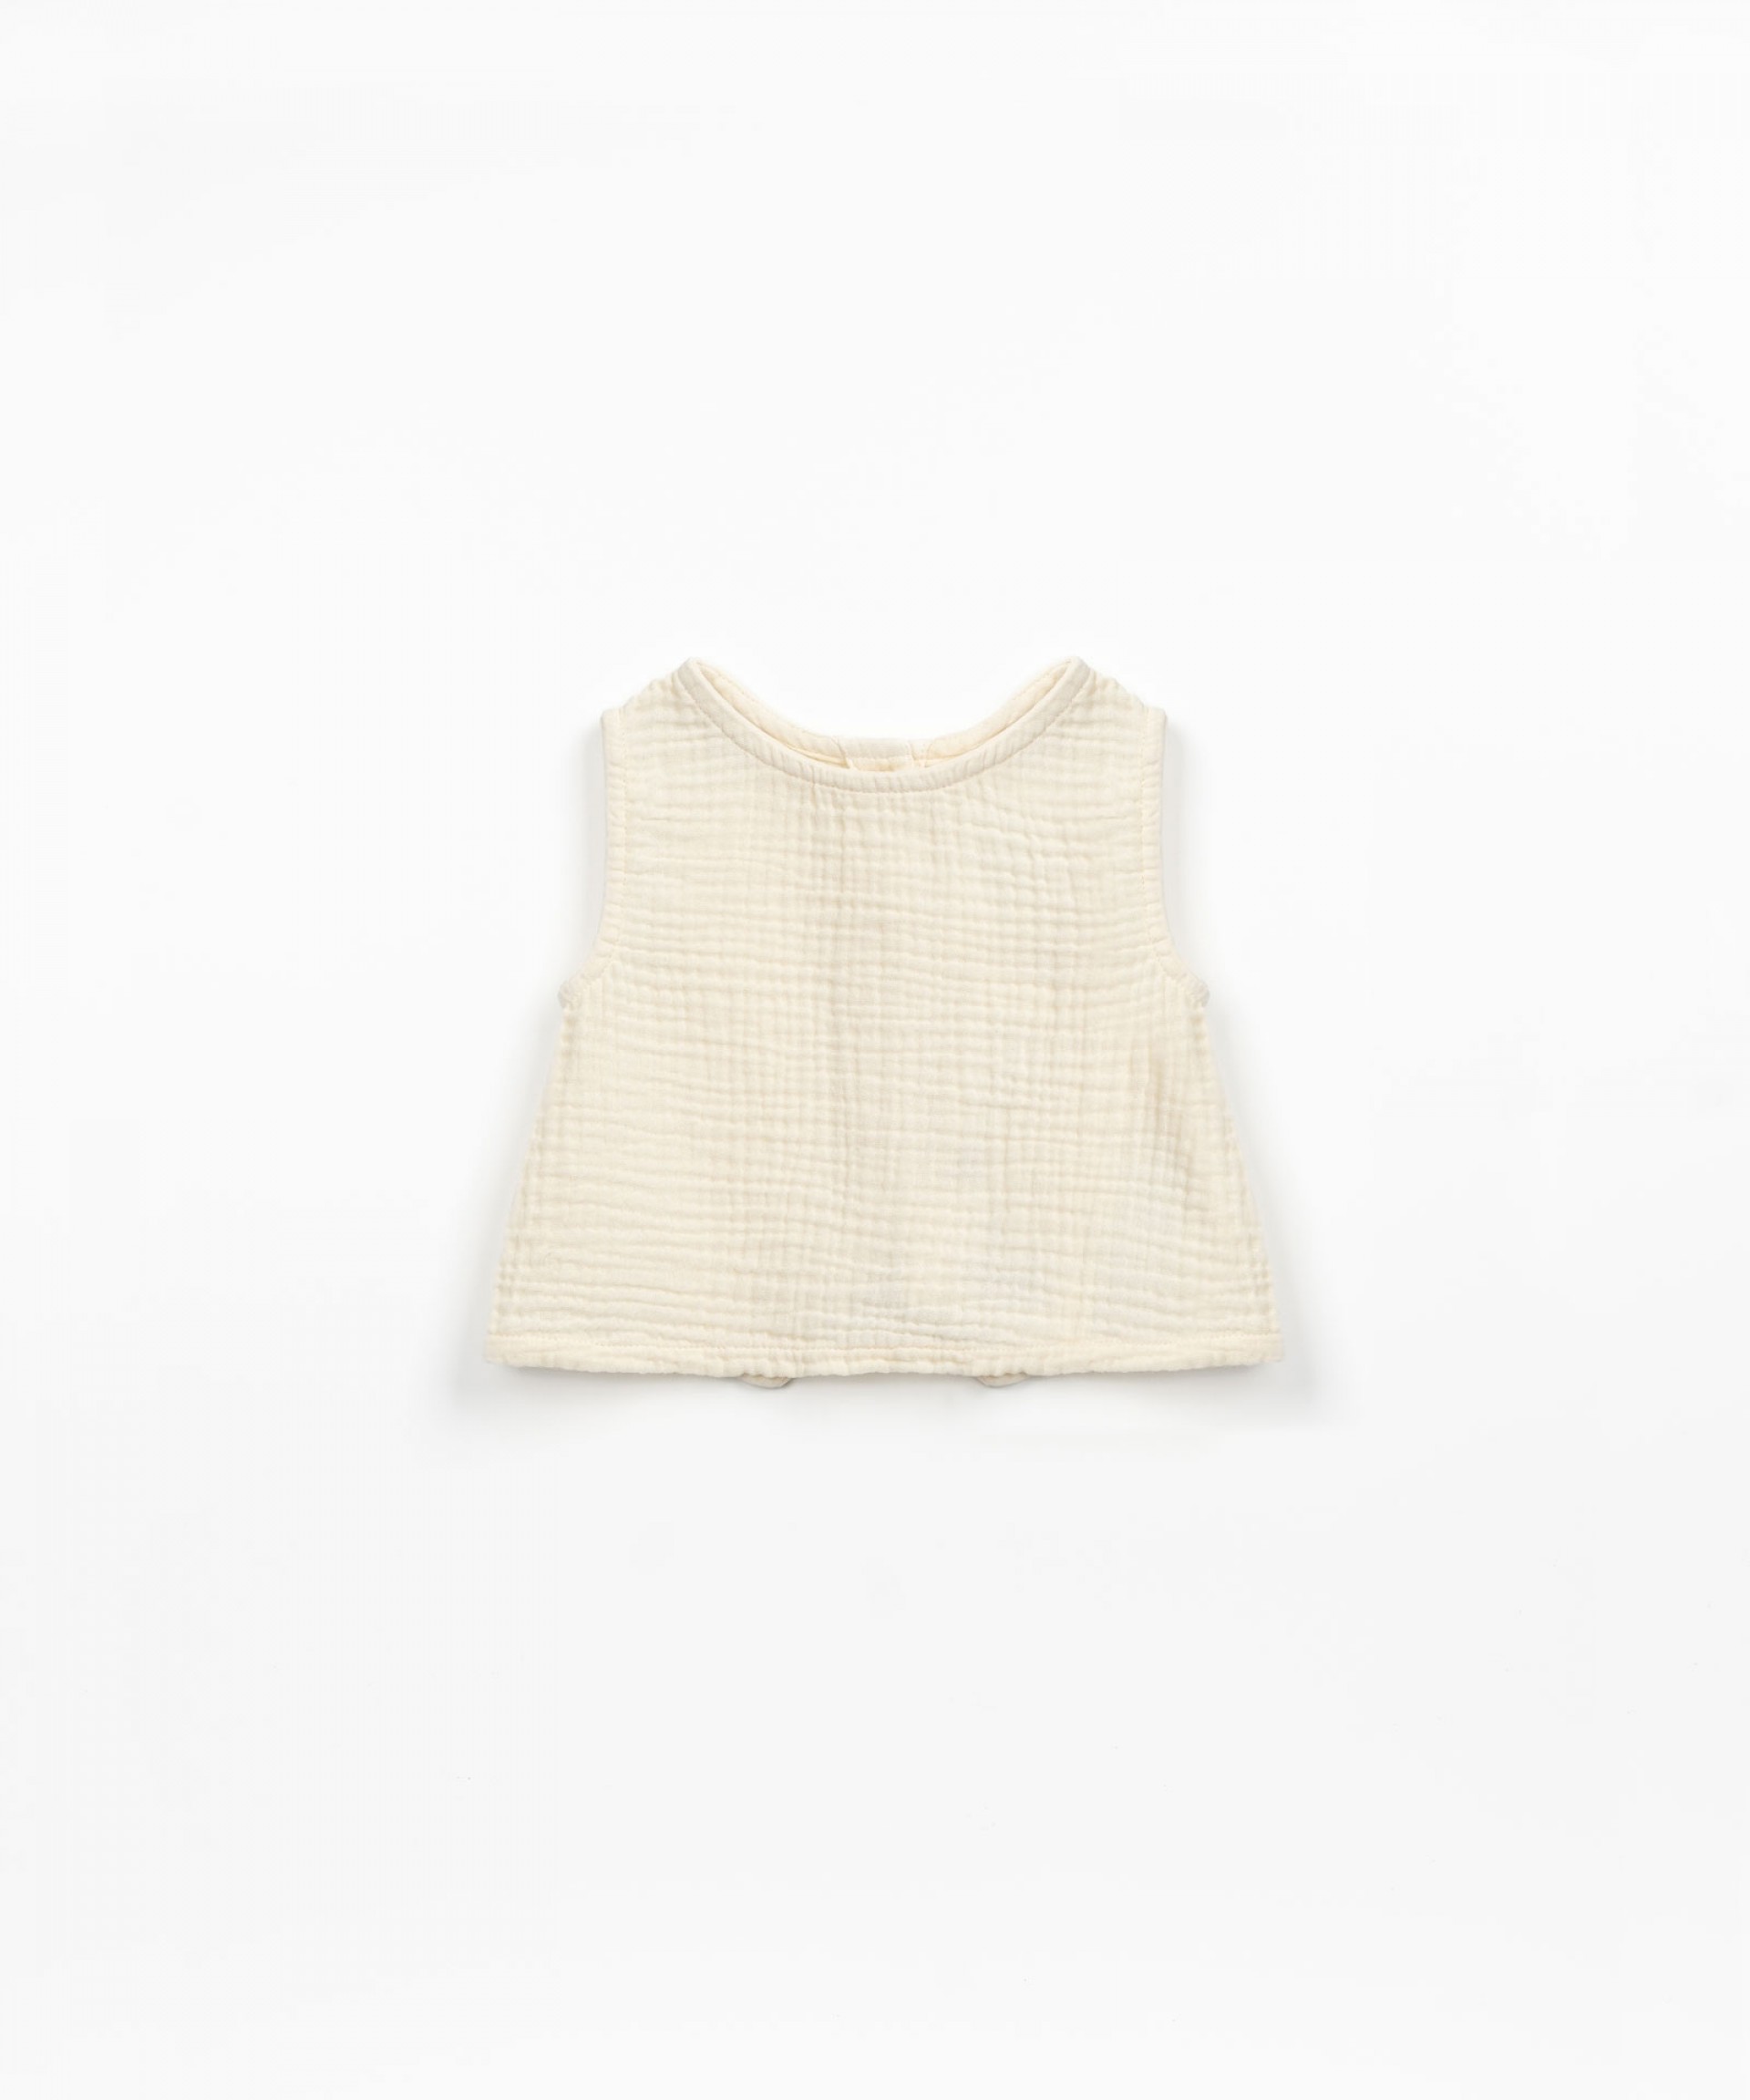 Blusa con abertura en la espalda | Textile Art